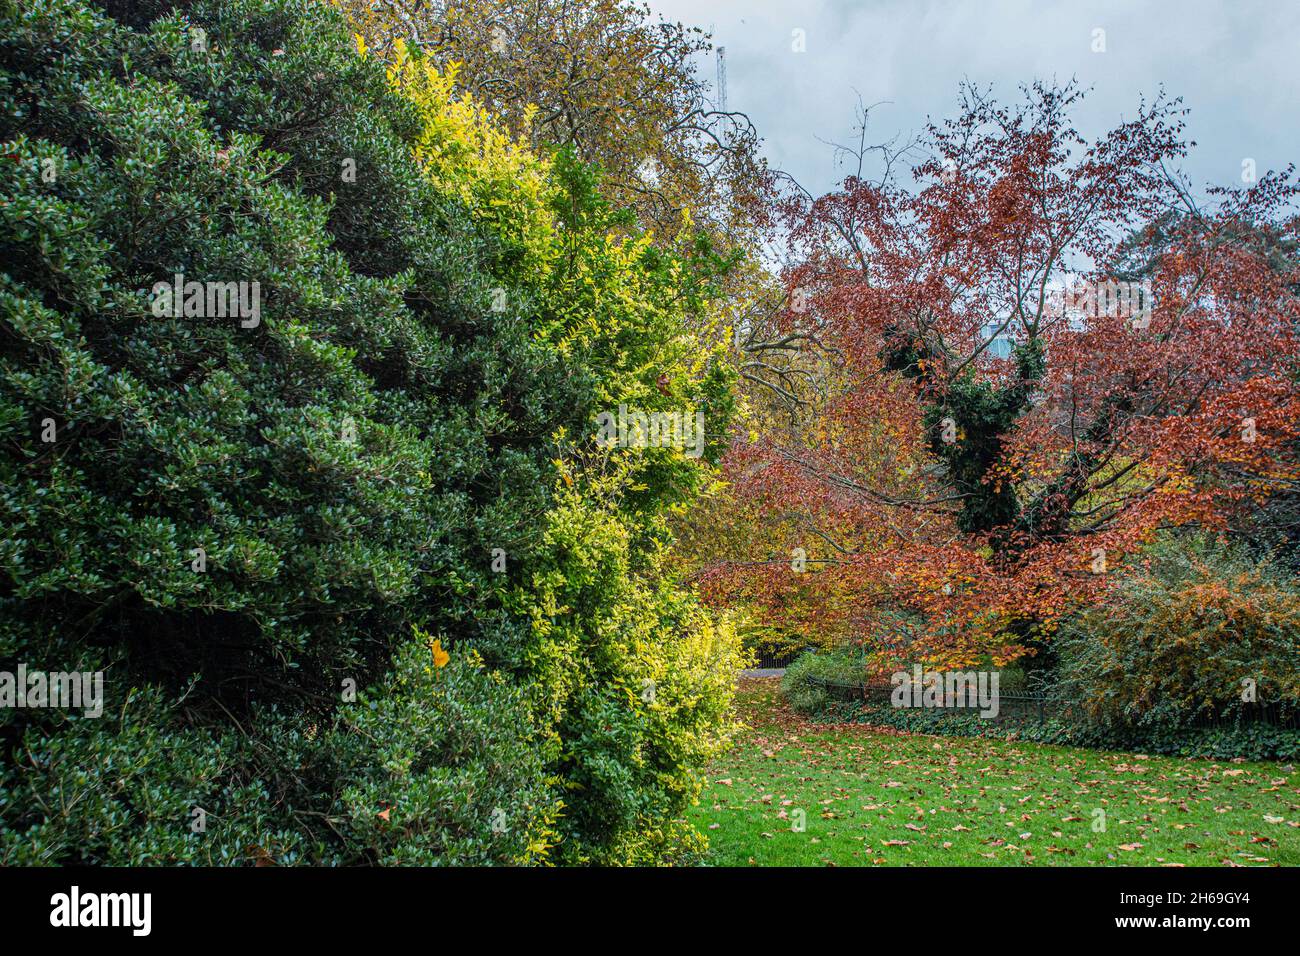 13. November 2021, London, England, Großbritannien: Battersea Park, London, Großbritannien, 13. November 2021. Battersea Park ist ein bekanntes Herbstziel in London. Abgesehen von der üblichen Auswahl an britischen Bäumen, hat es eine Vielzahl von subtropischen und Wintergärten, die es besonders faszinierend machen. Die hybriden Erdbeerbäume stechen hervor und färben in dieser Saison alles rot. (Bild: © Sabrina Merolla/ZUMA Press Wire) Stockfoto